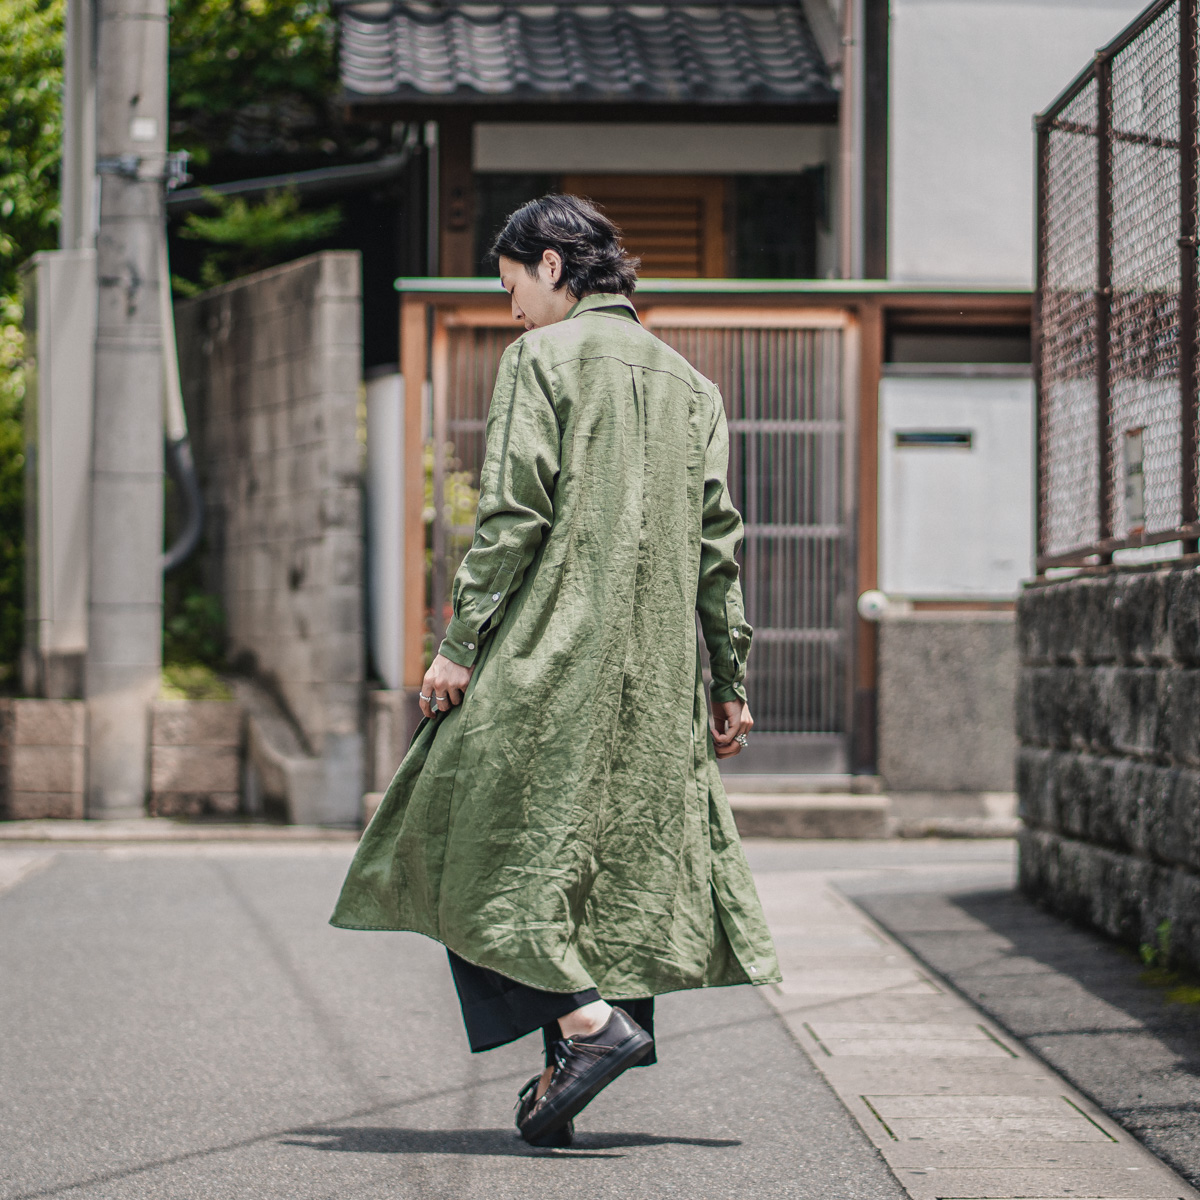 マリア・トゥーリのリネンシャツ | HUES 福岡セレクトショップ